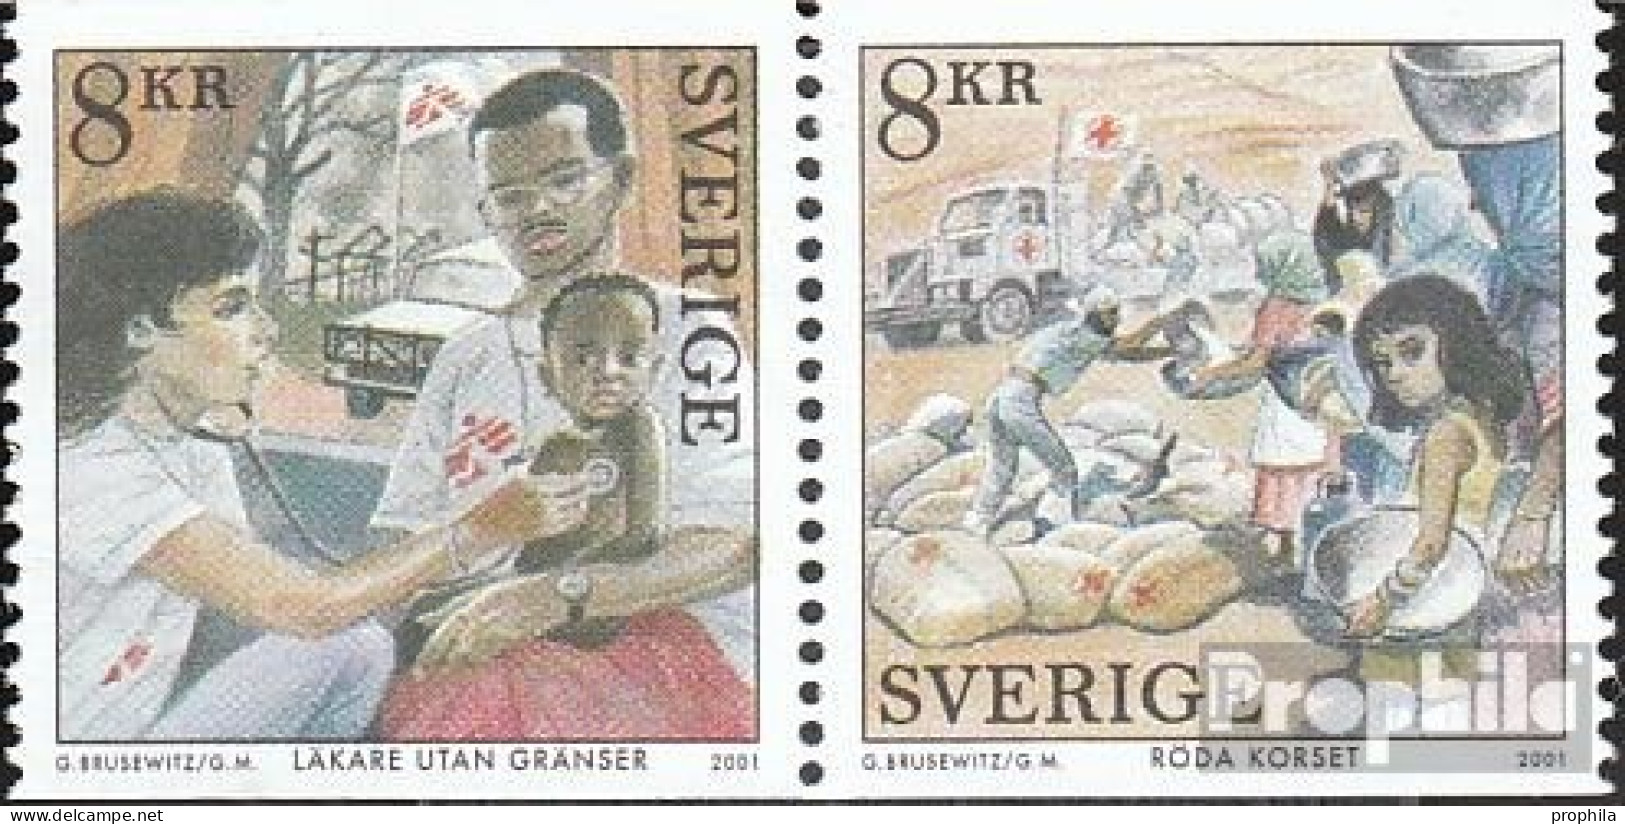 Schweden 2243-2244 Paar (kompl.Ausg.) Postfrisch 2001 Friedensnobelpreis - Ungebraucht